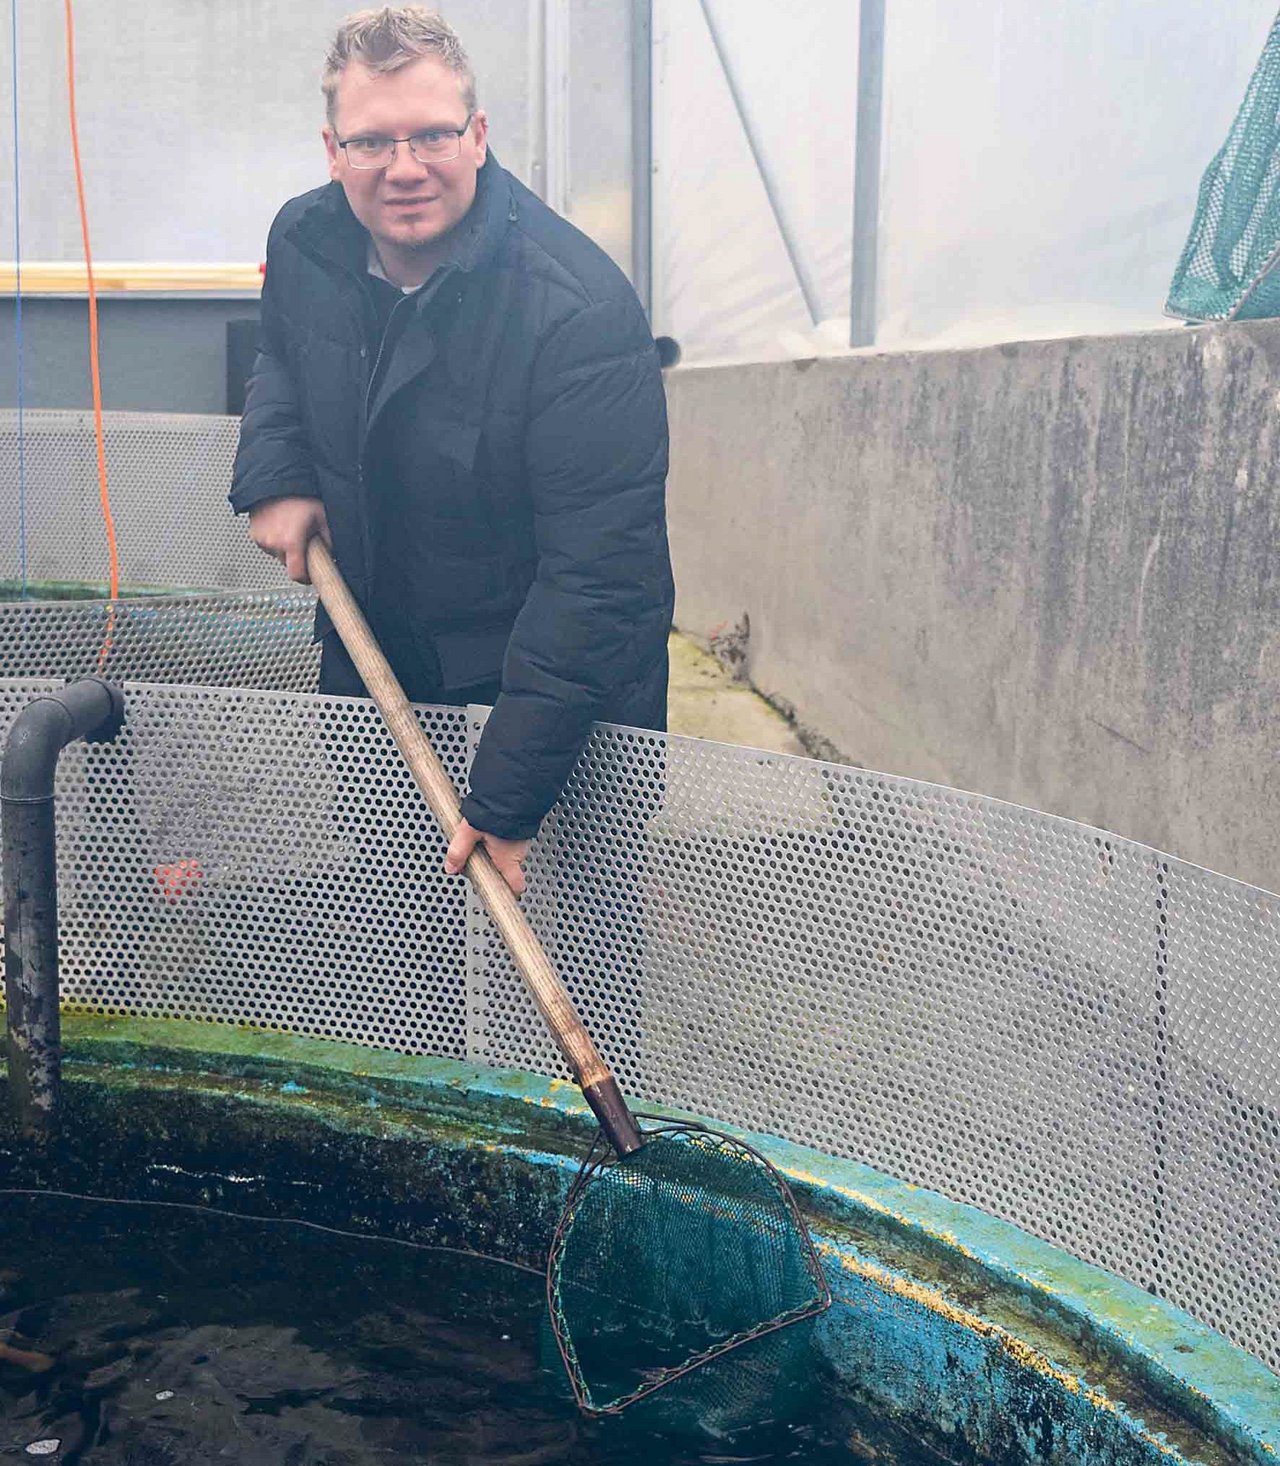 Martin Junker bei den Lachsforellen. Die alten Silofundamente wurden zu Fischbecken umfunktioniert.